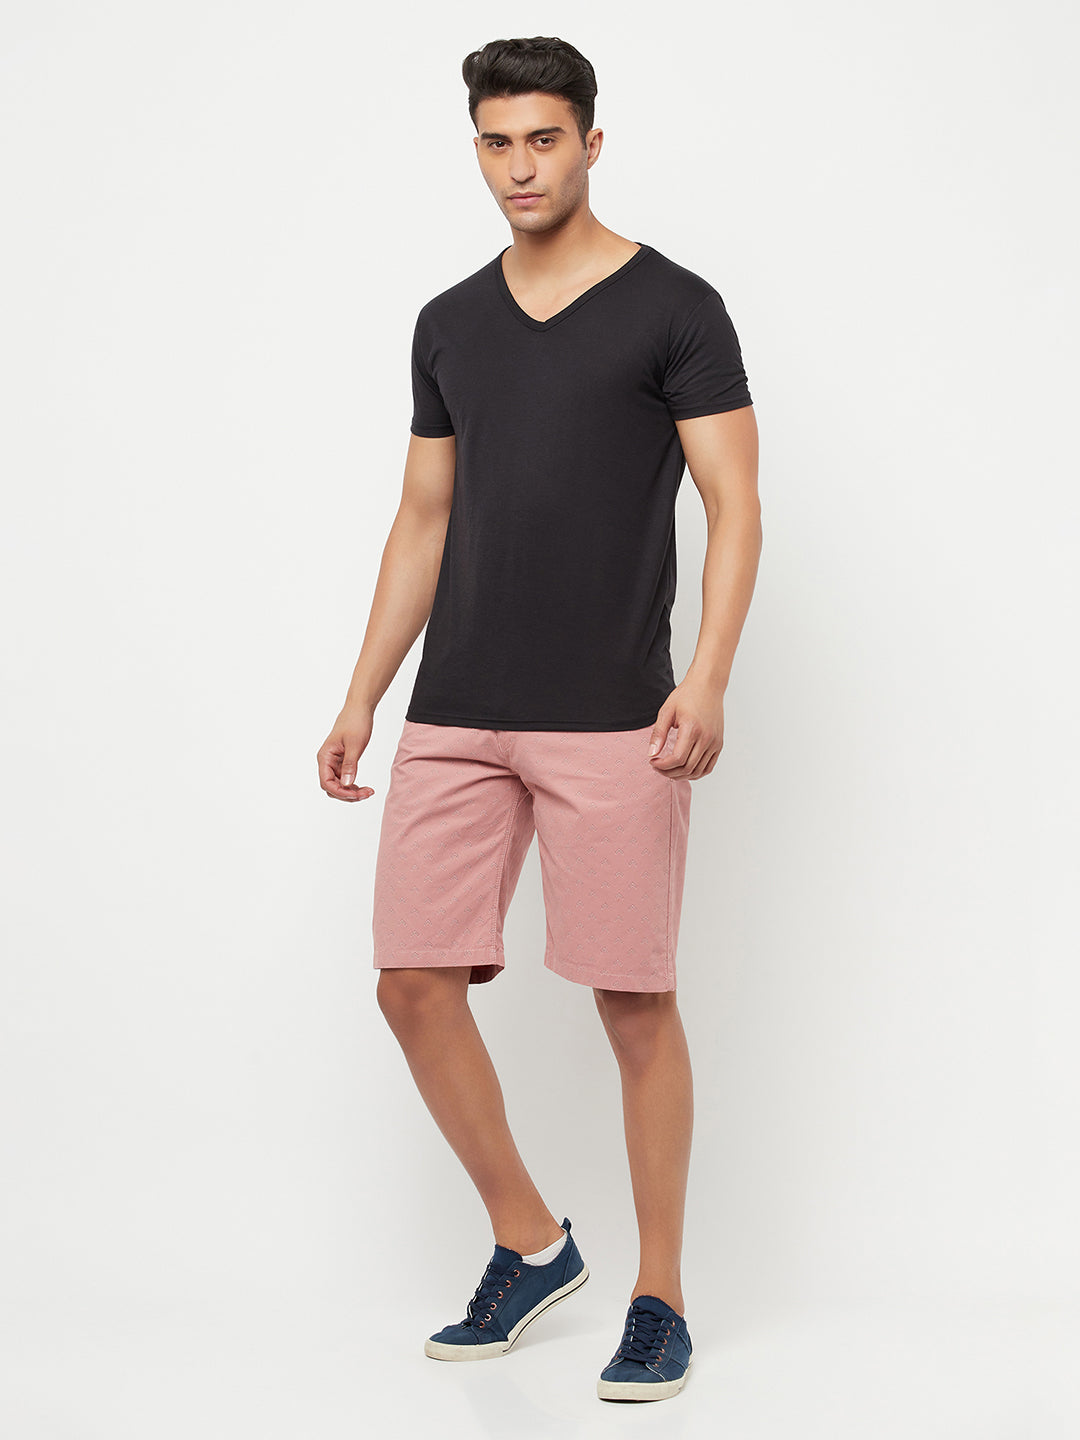 Pink Printed Shorts - Men Shorts